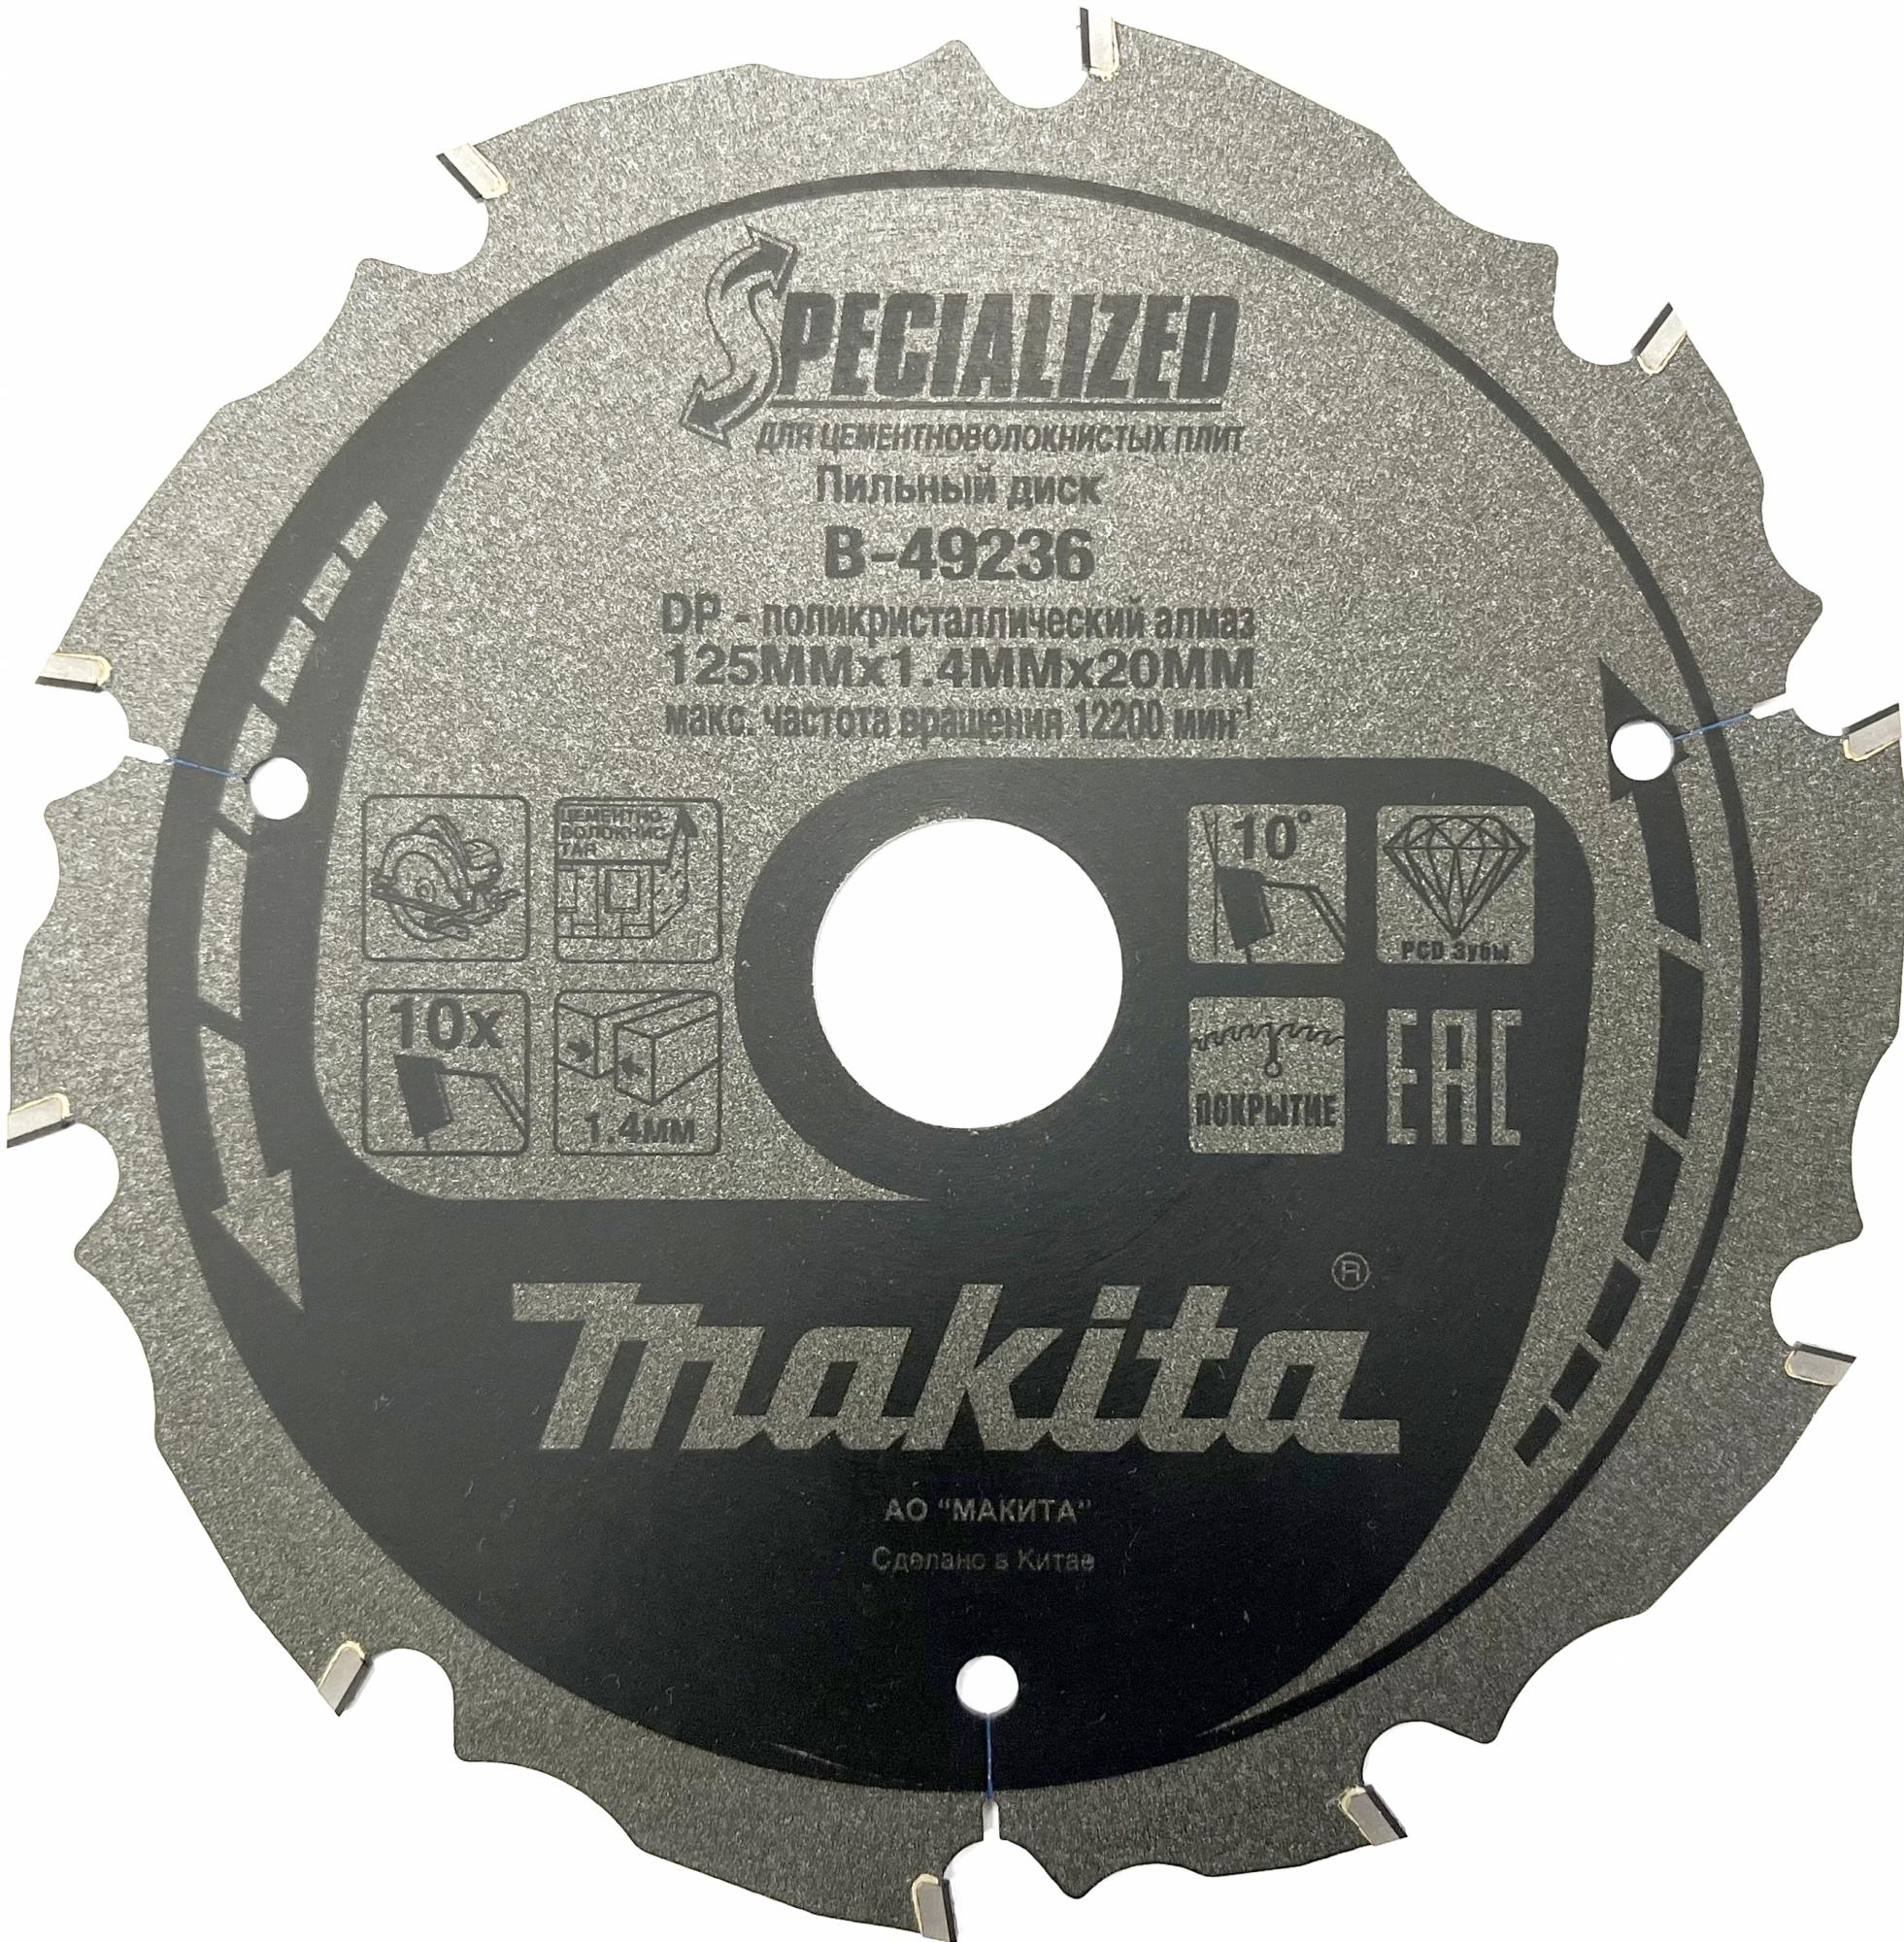 MAKITA Пильный диск для цементноволокнистых плит, 125x20x1.4/1x10T MAKITA B-49236